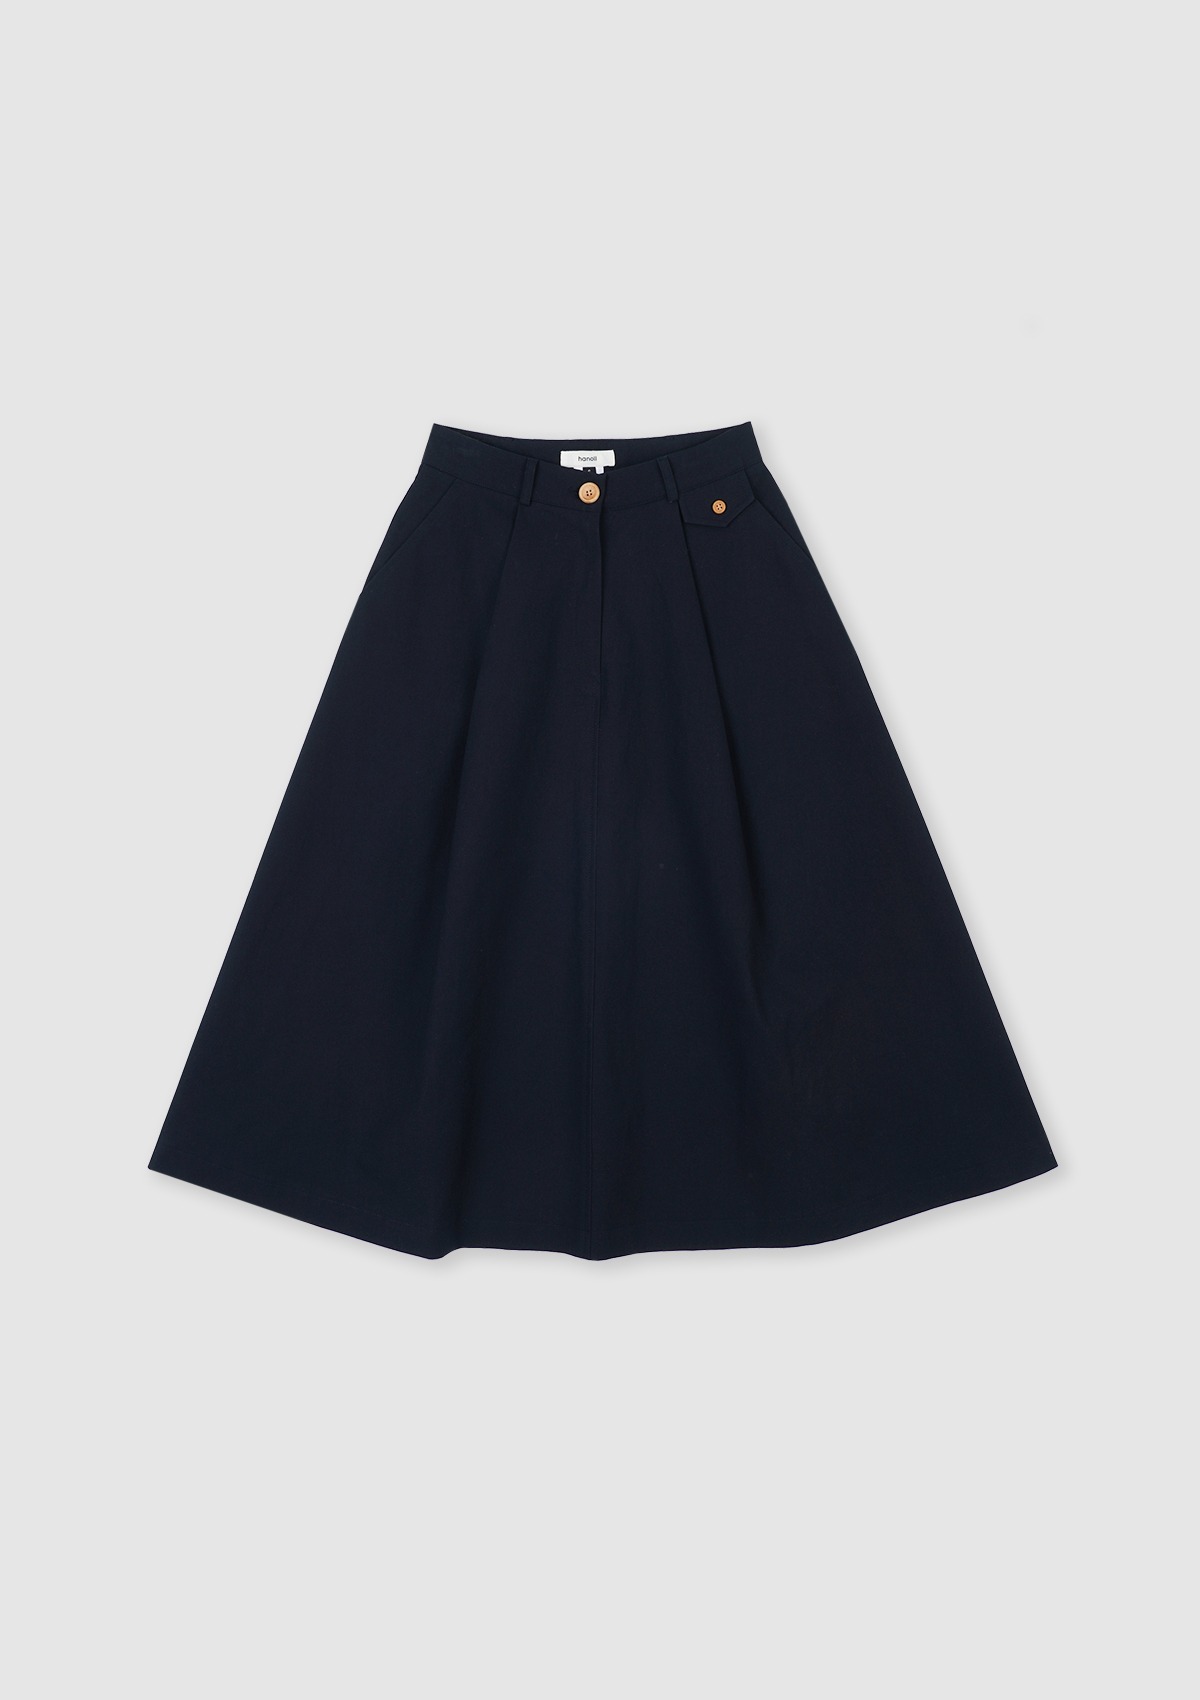 Clover Skirt (Navy)